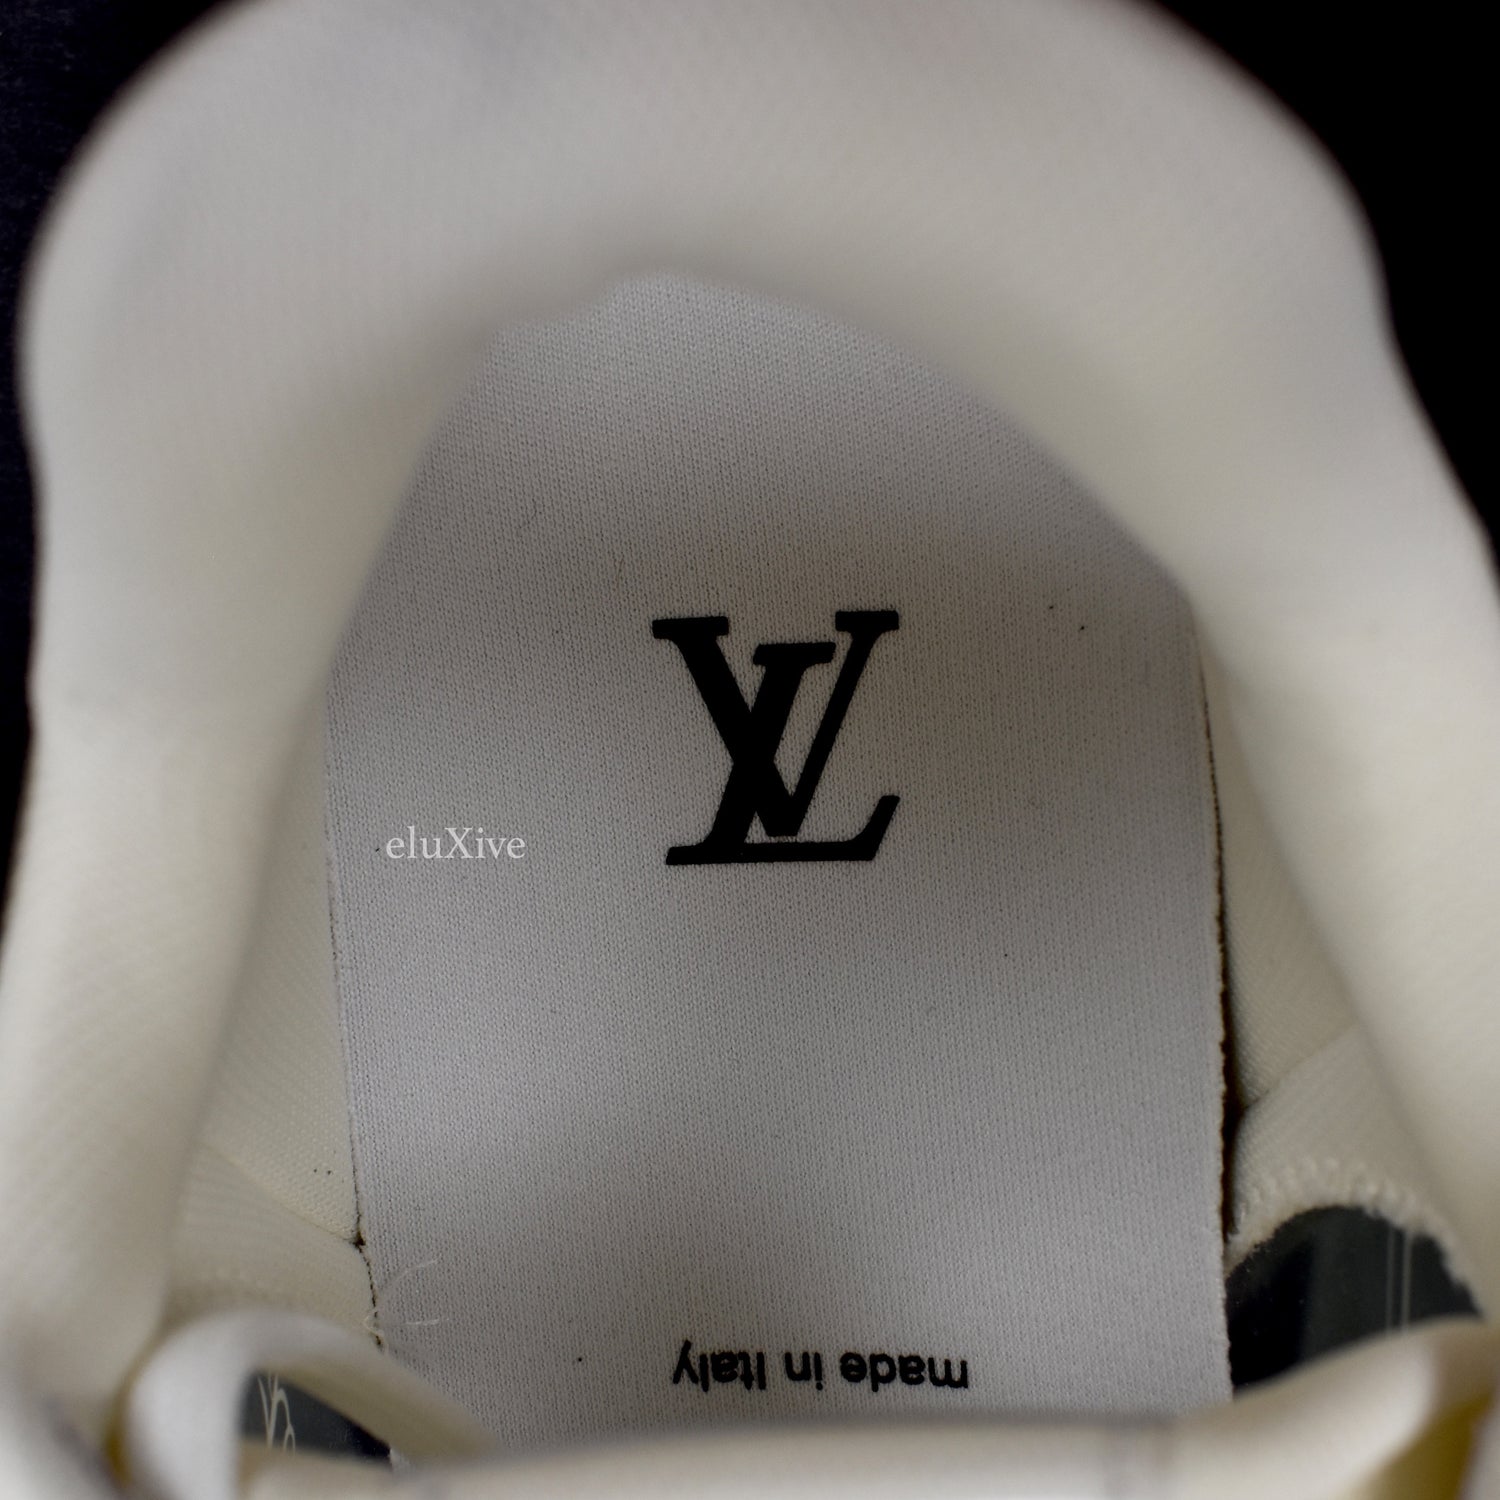 Louis Vuitton Transparent 'LV Trainer' Strap Sneakers